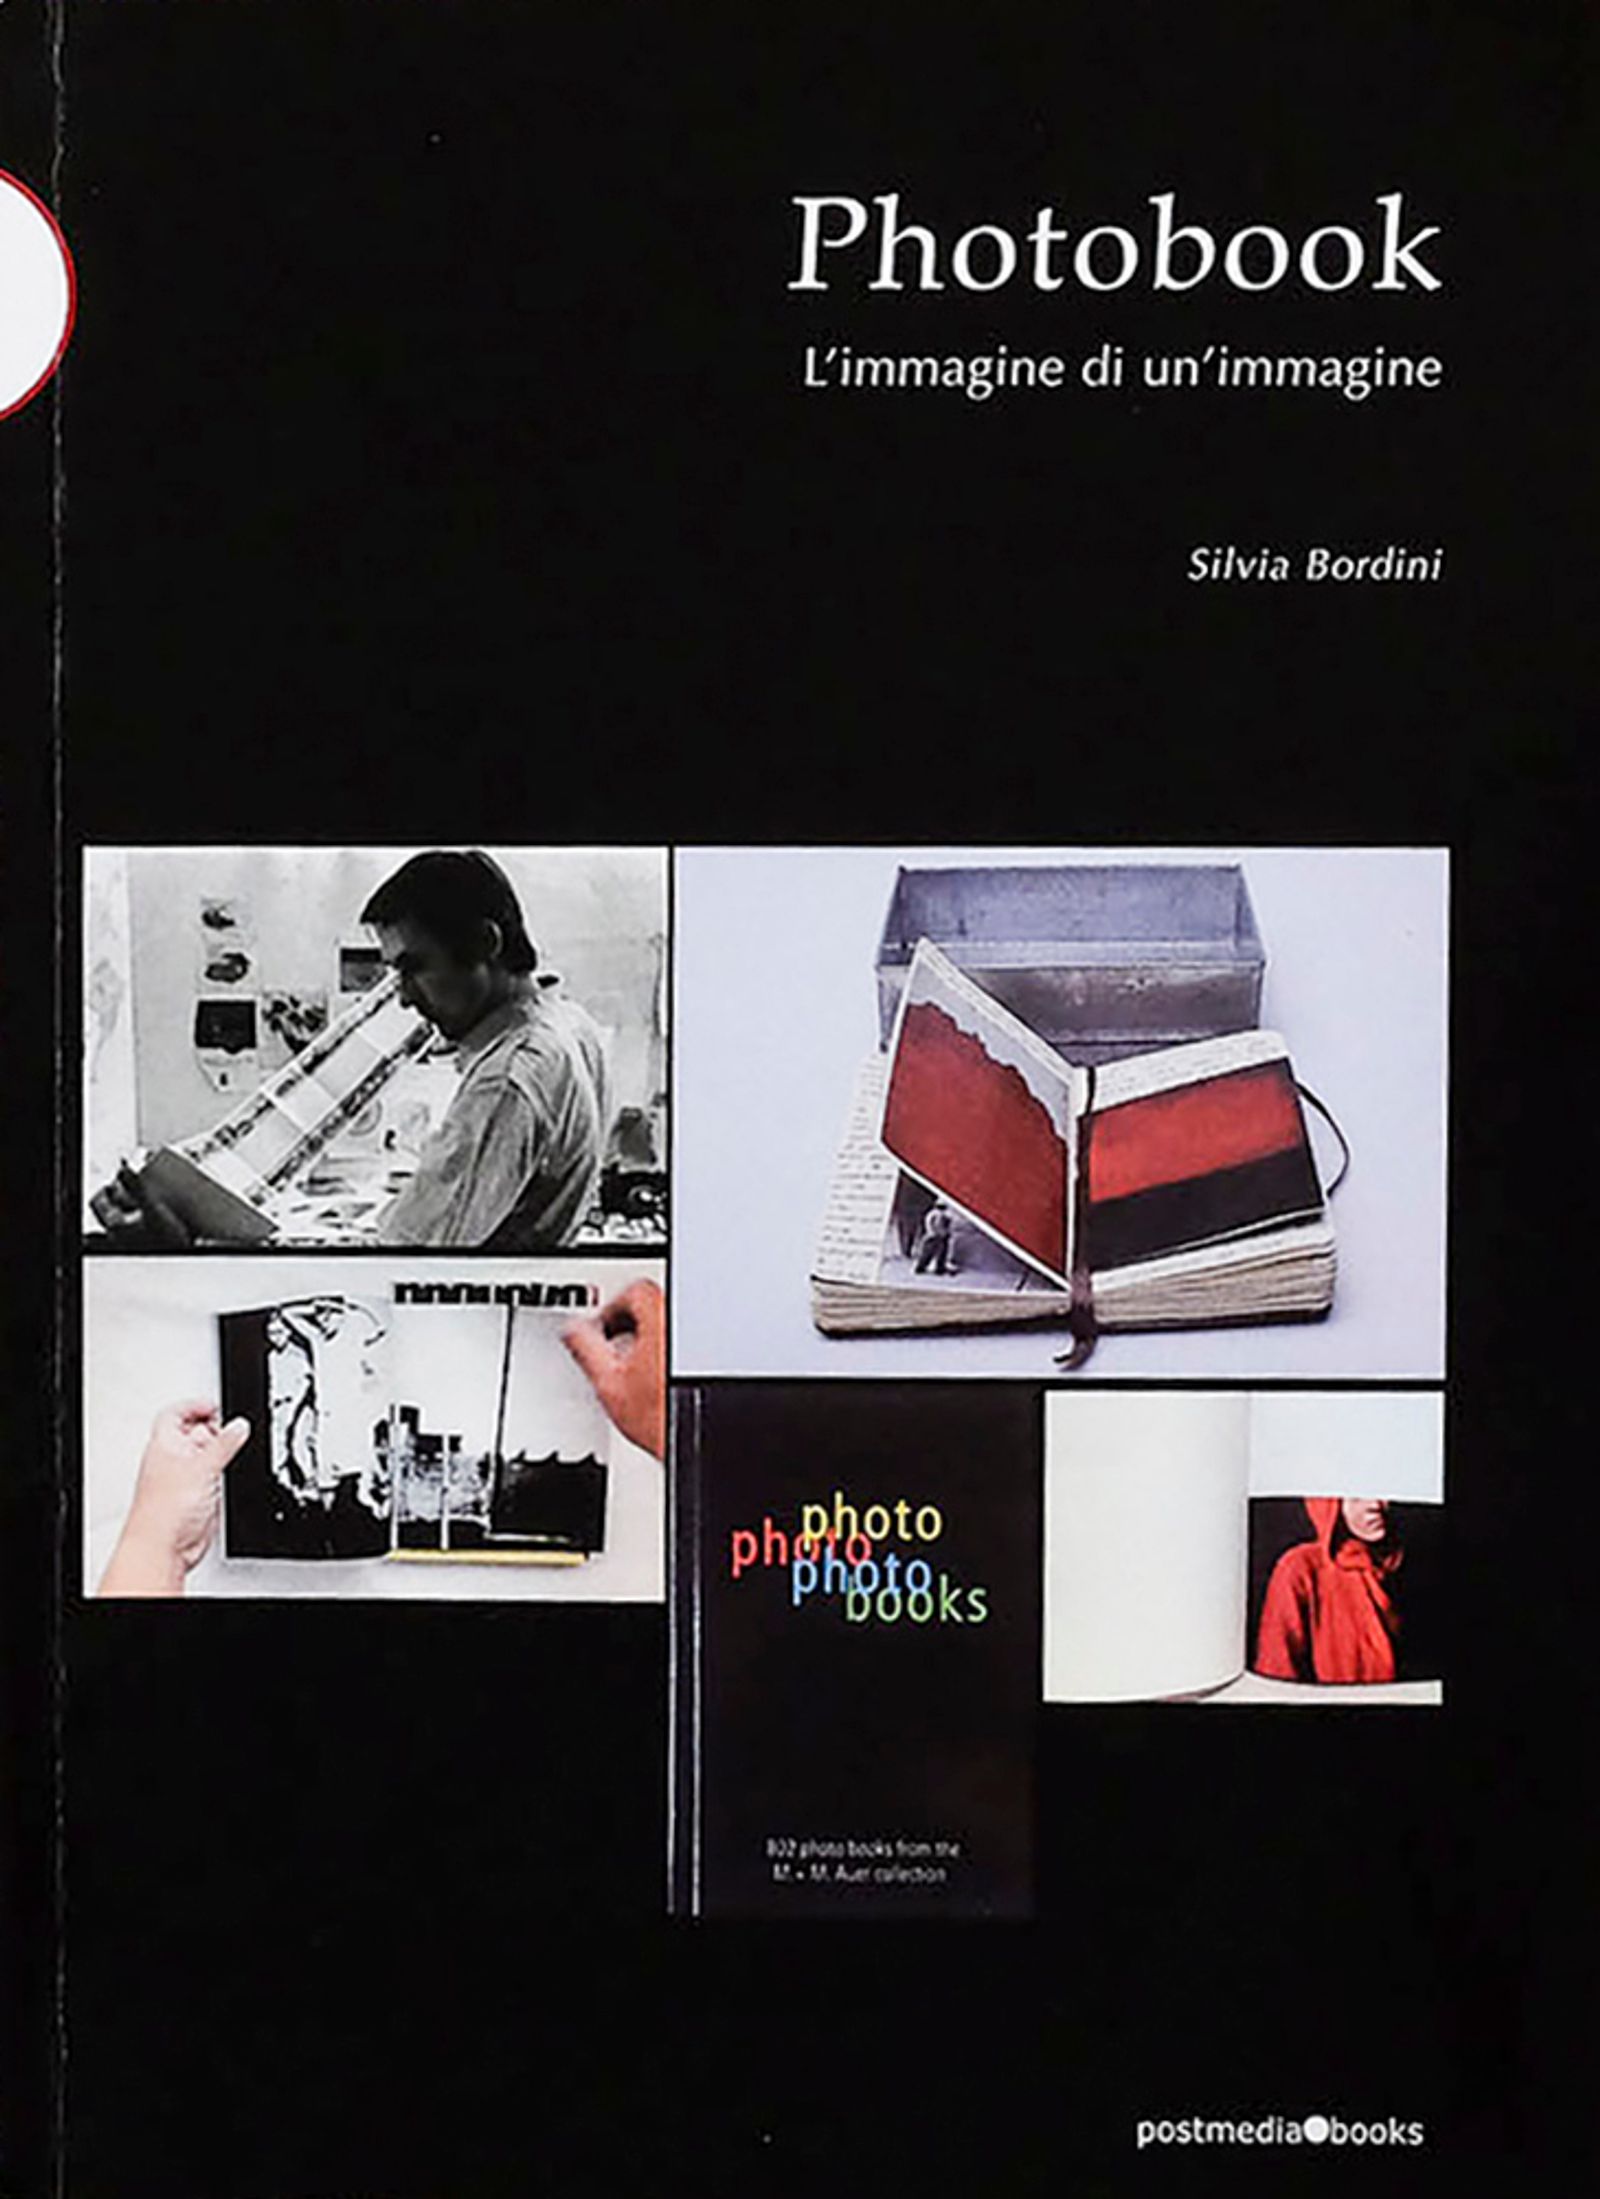 © Leporello Books - Image from the PHOTOBOOK - L'IMMAGINE DI UN'IMMAGINE by Silvia Bordini photography project